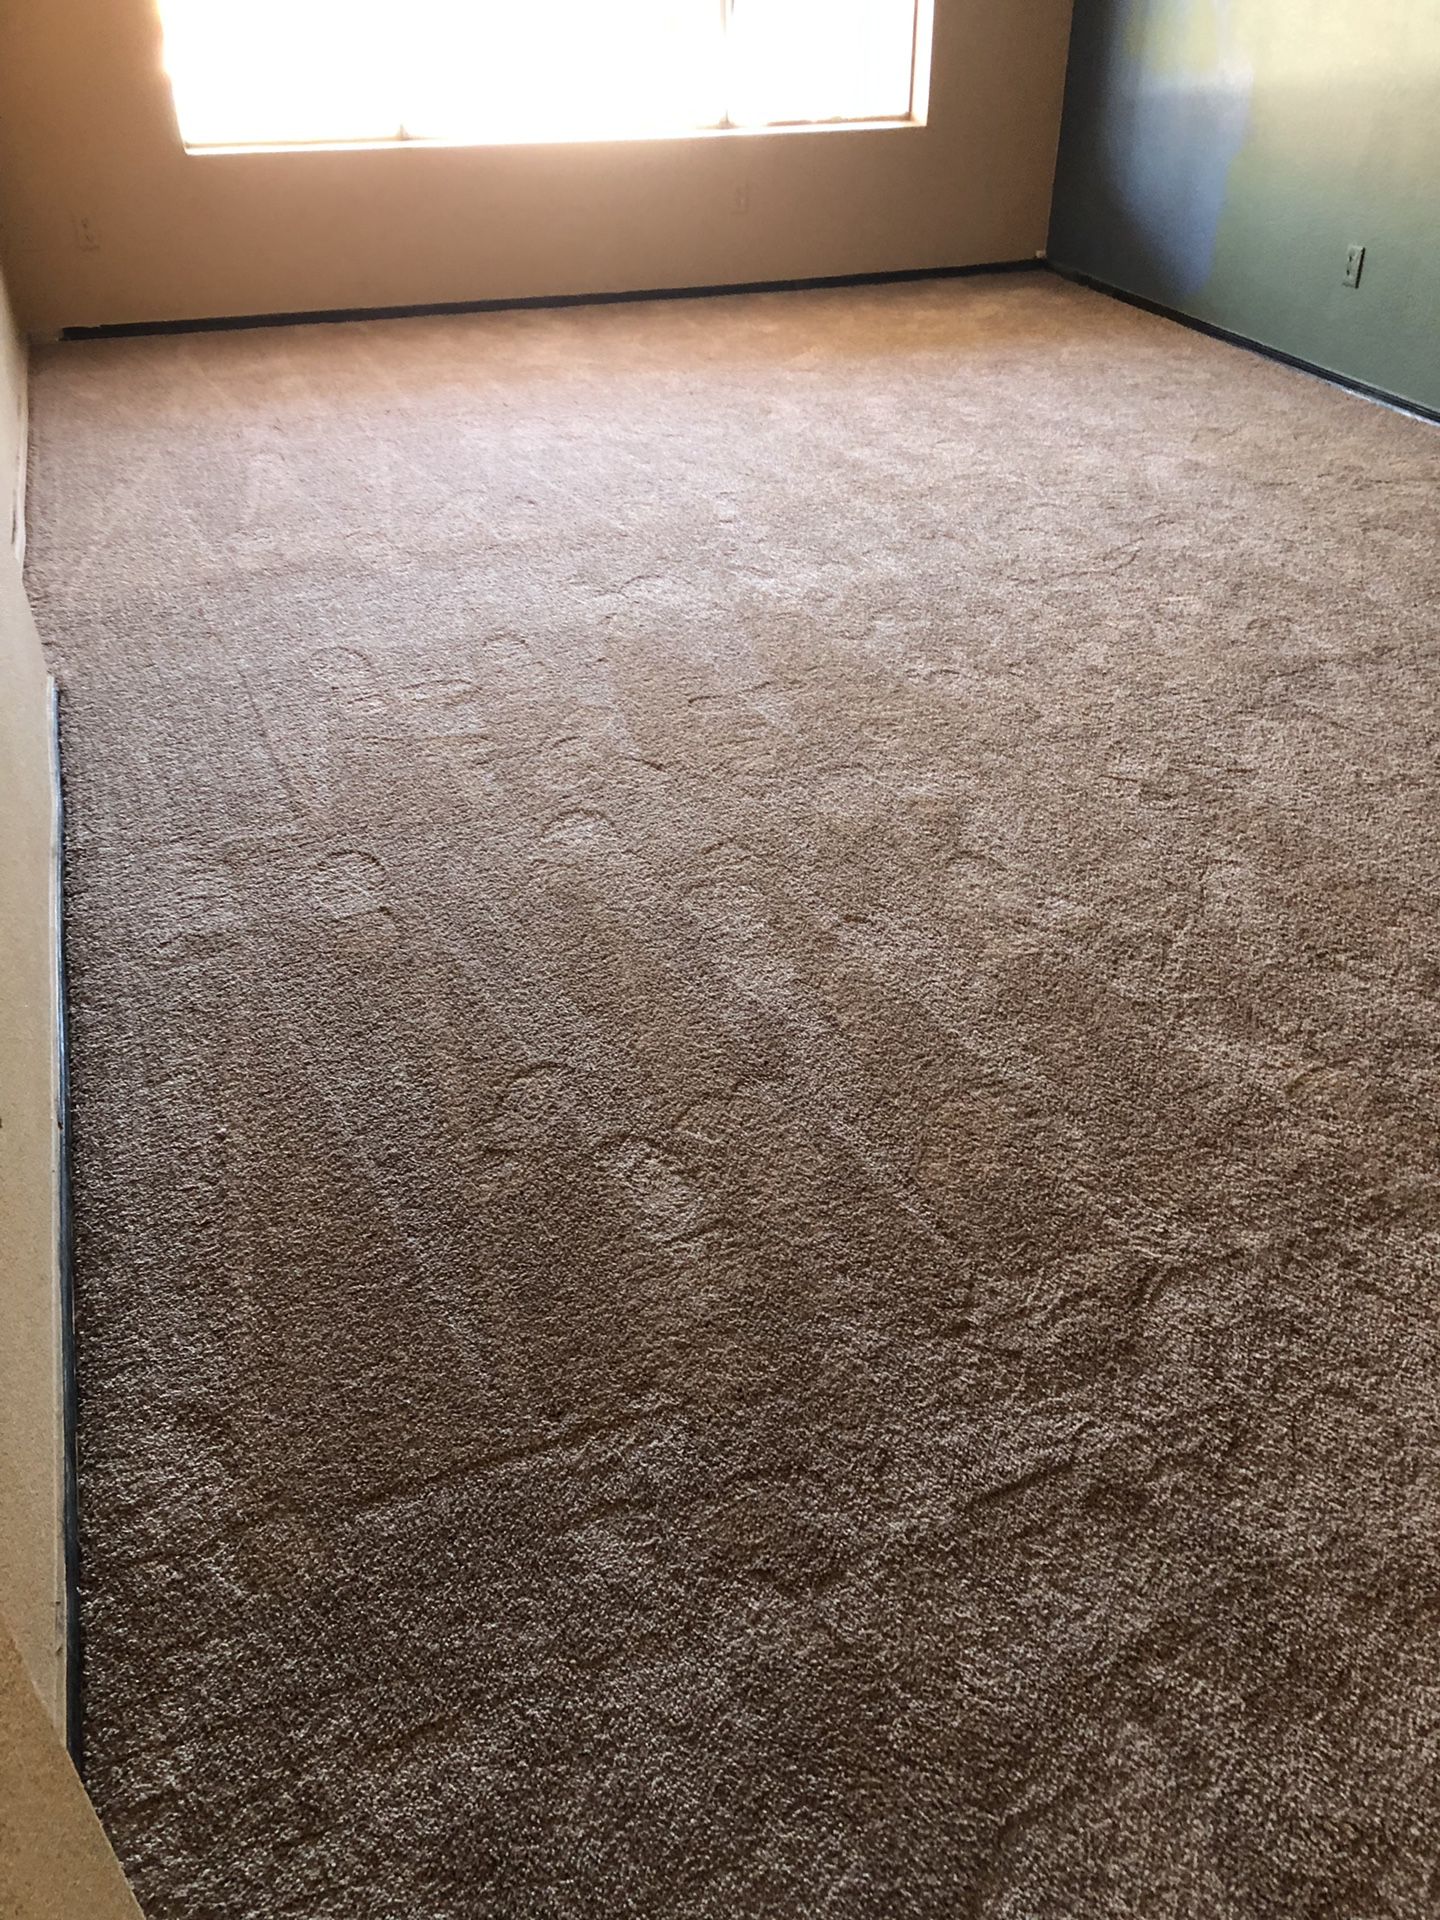 New carpet won’t match my color scheme